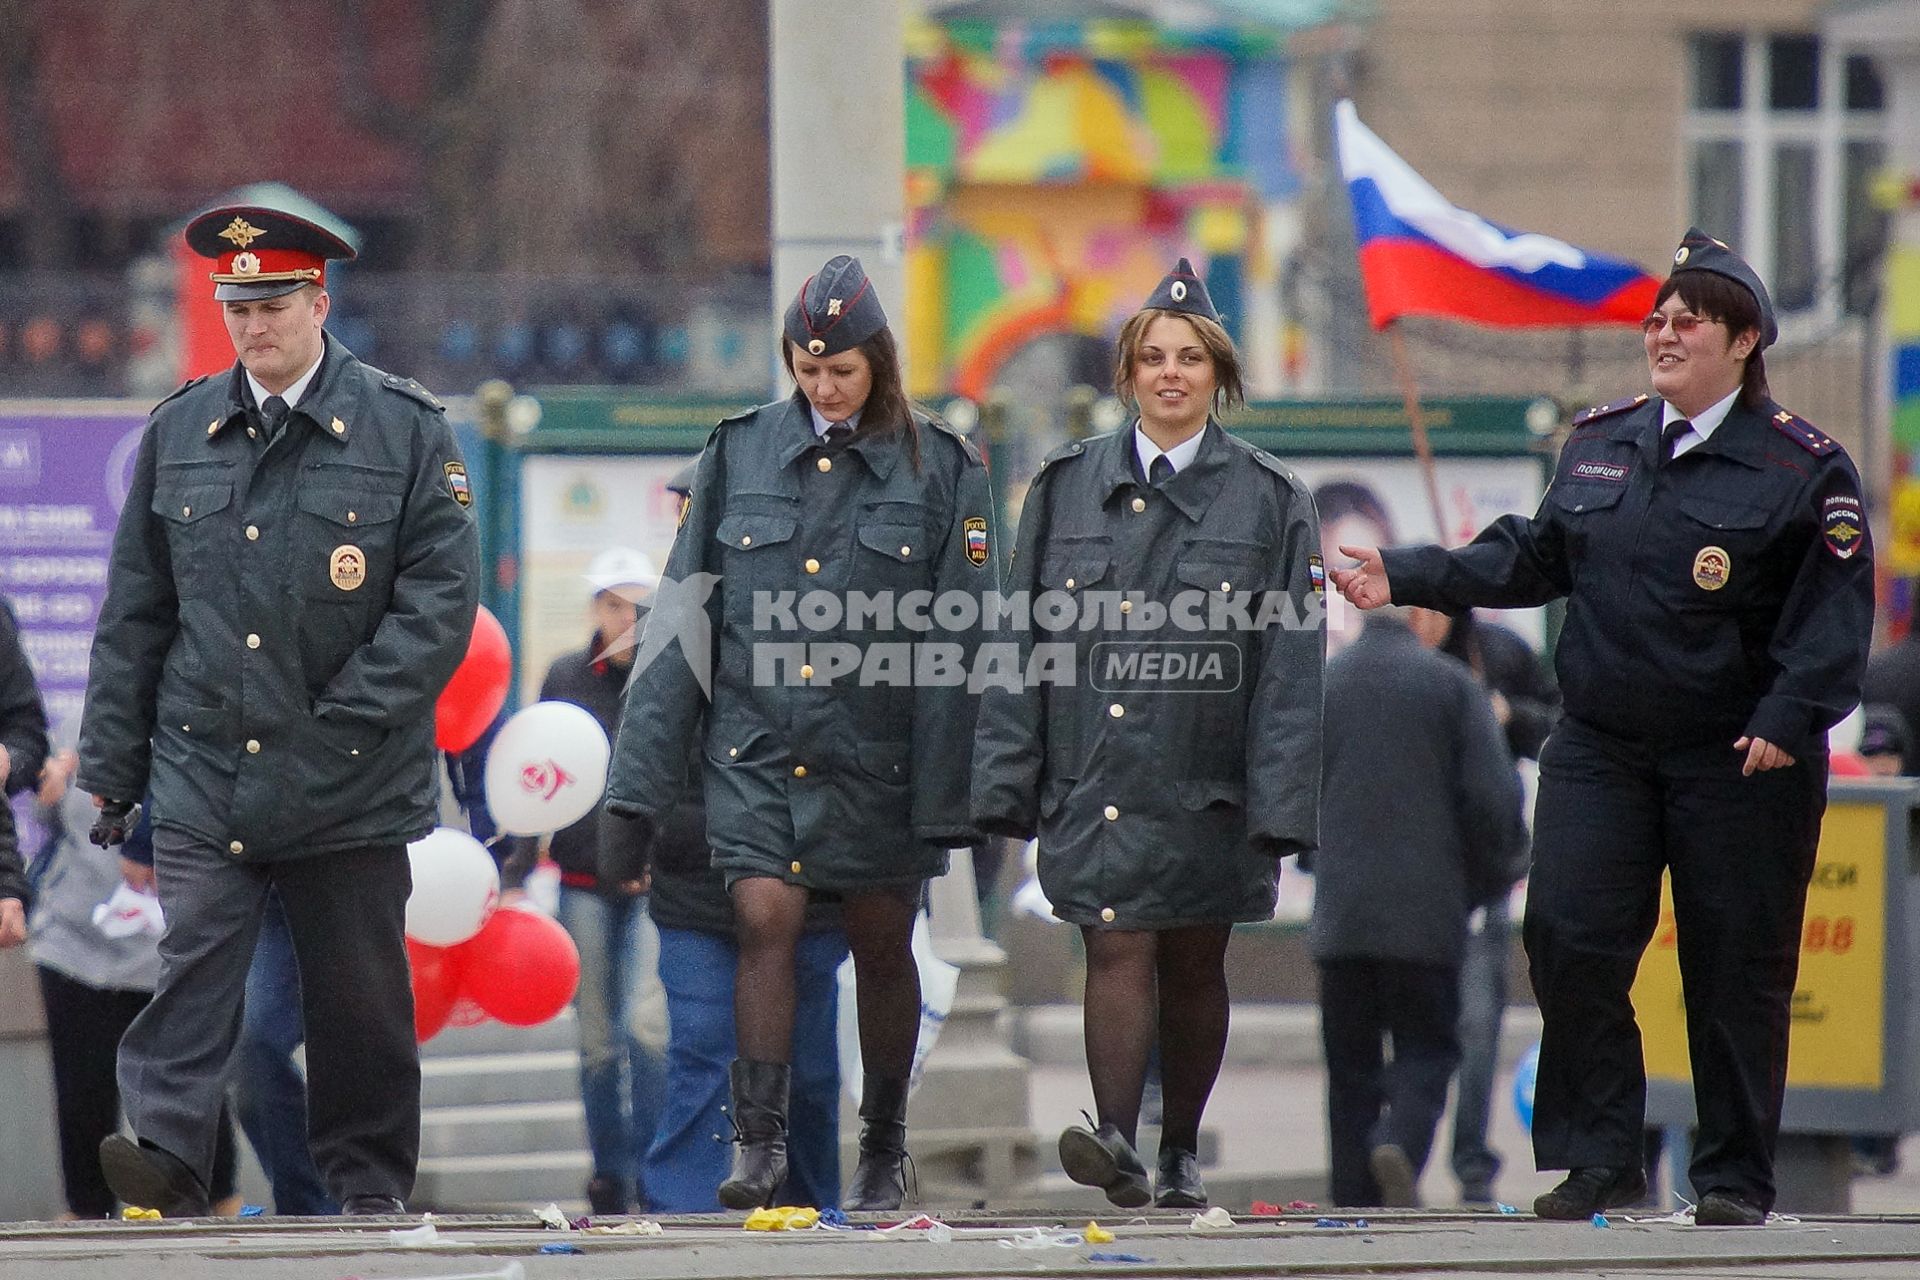 Празднование 1 мая в Екатеринбурге. На снимке: полицейские на демонстрации.